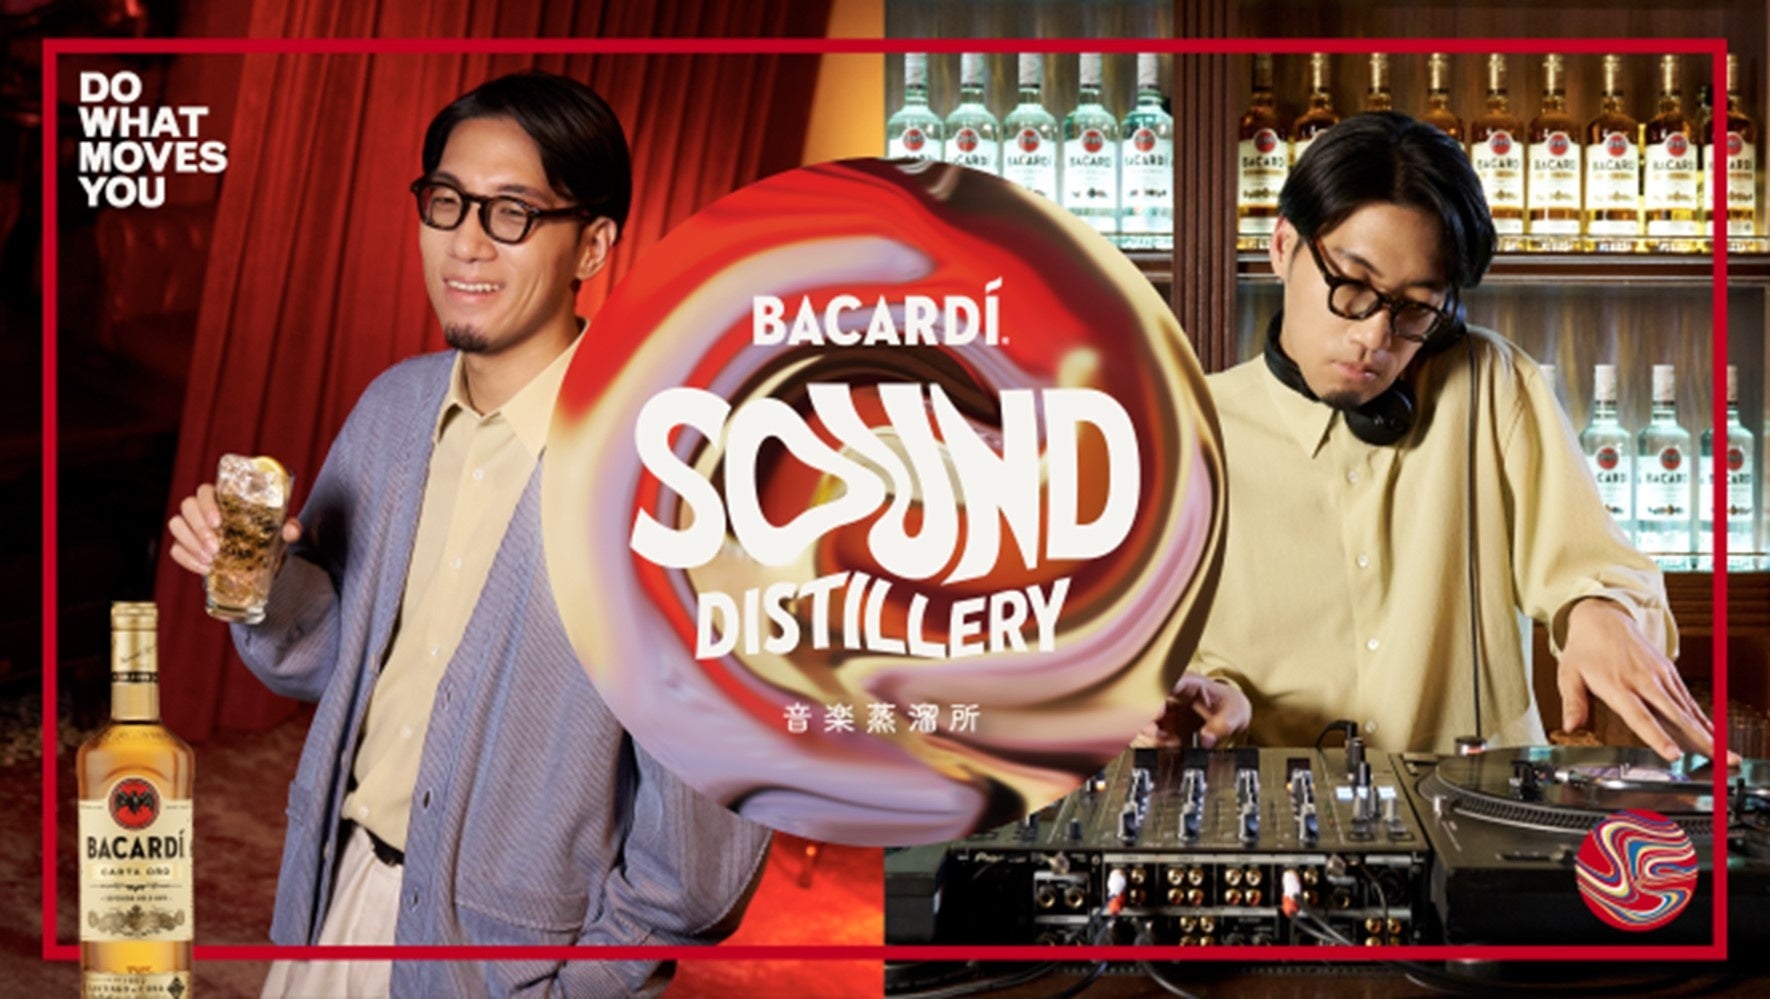 独自のブレンドで作られるバカルディラムのように、異なる音が混ざり合い、新しい音楽が生まれるプロジェクト「BACARDI Sound Distillery 音楽蒸溜所」がスタート！